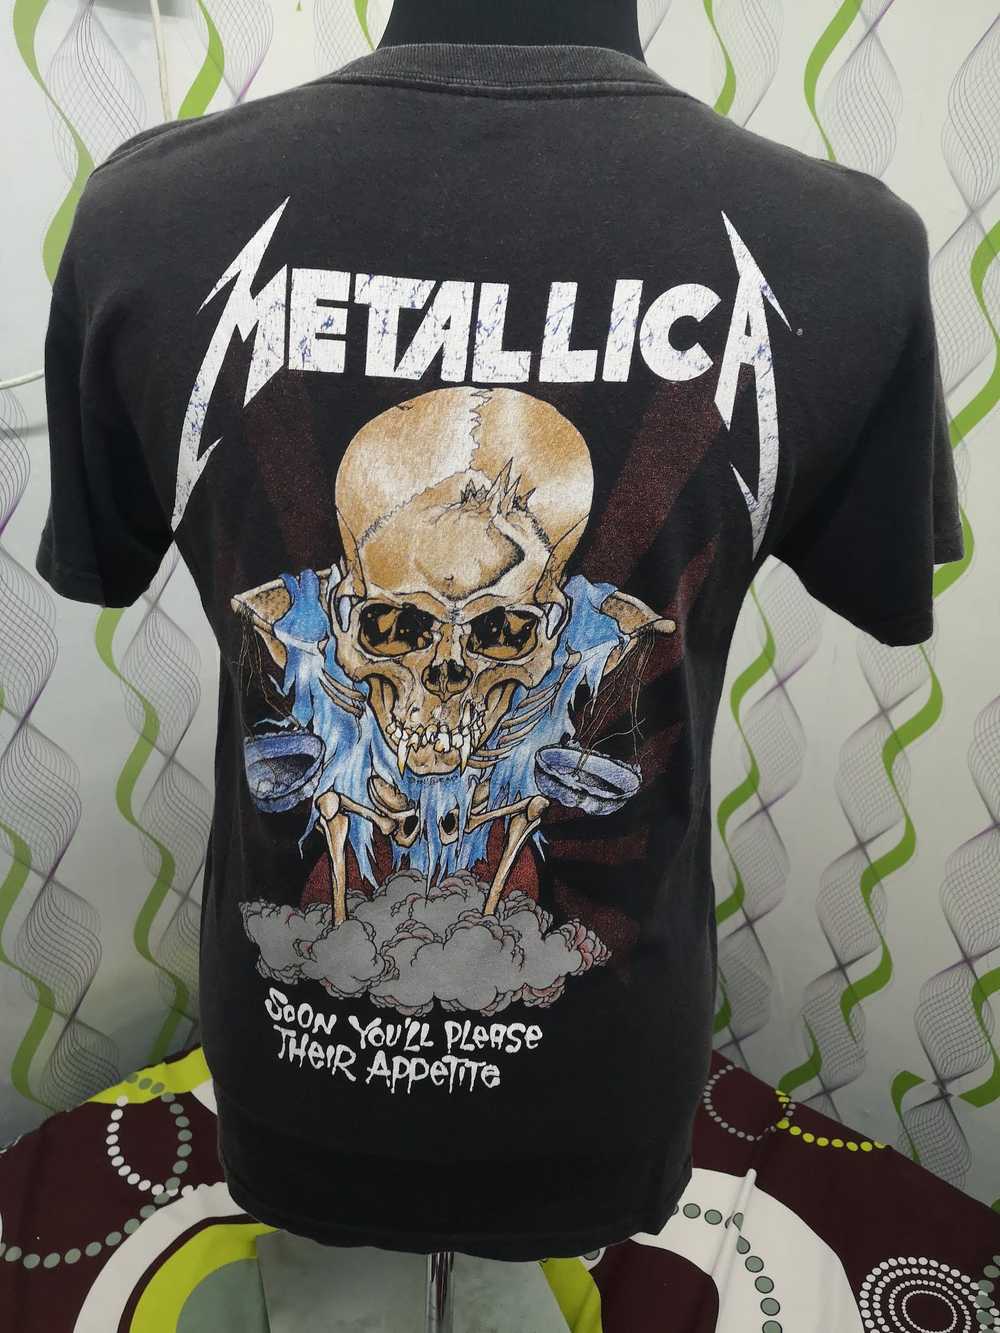 Band Tees × Metallica Nice Metalica Pushead - image 2